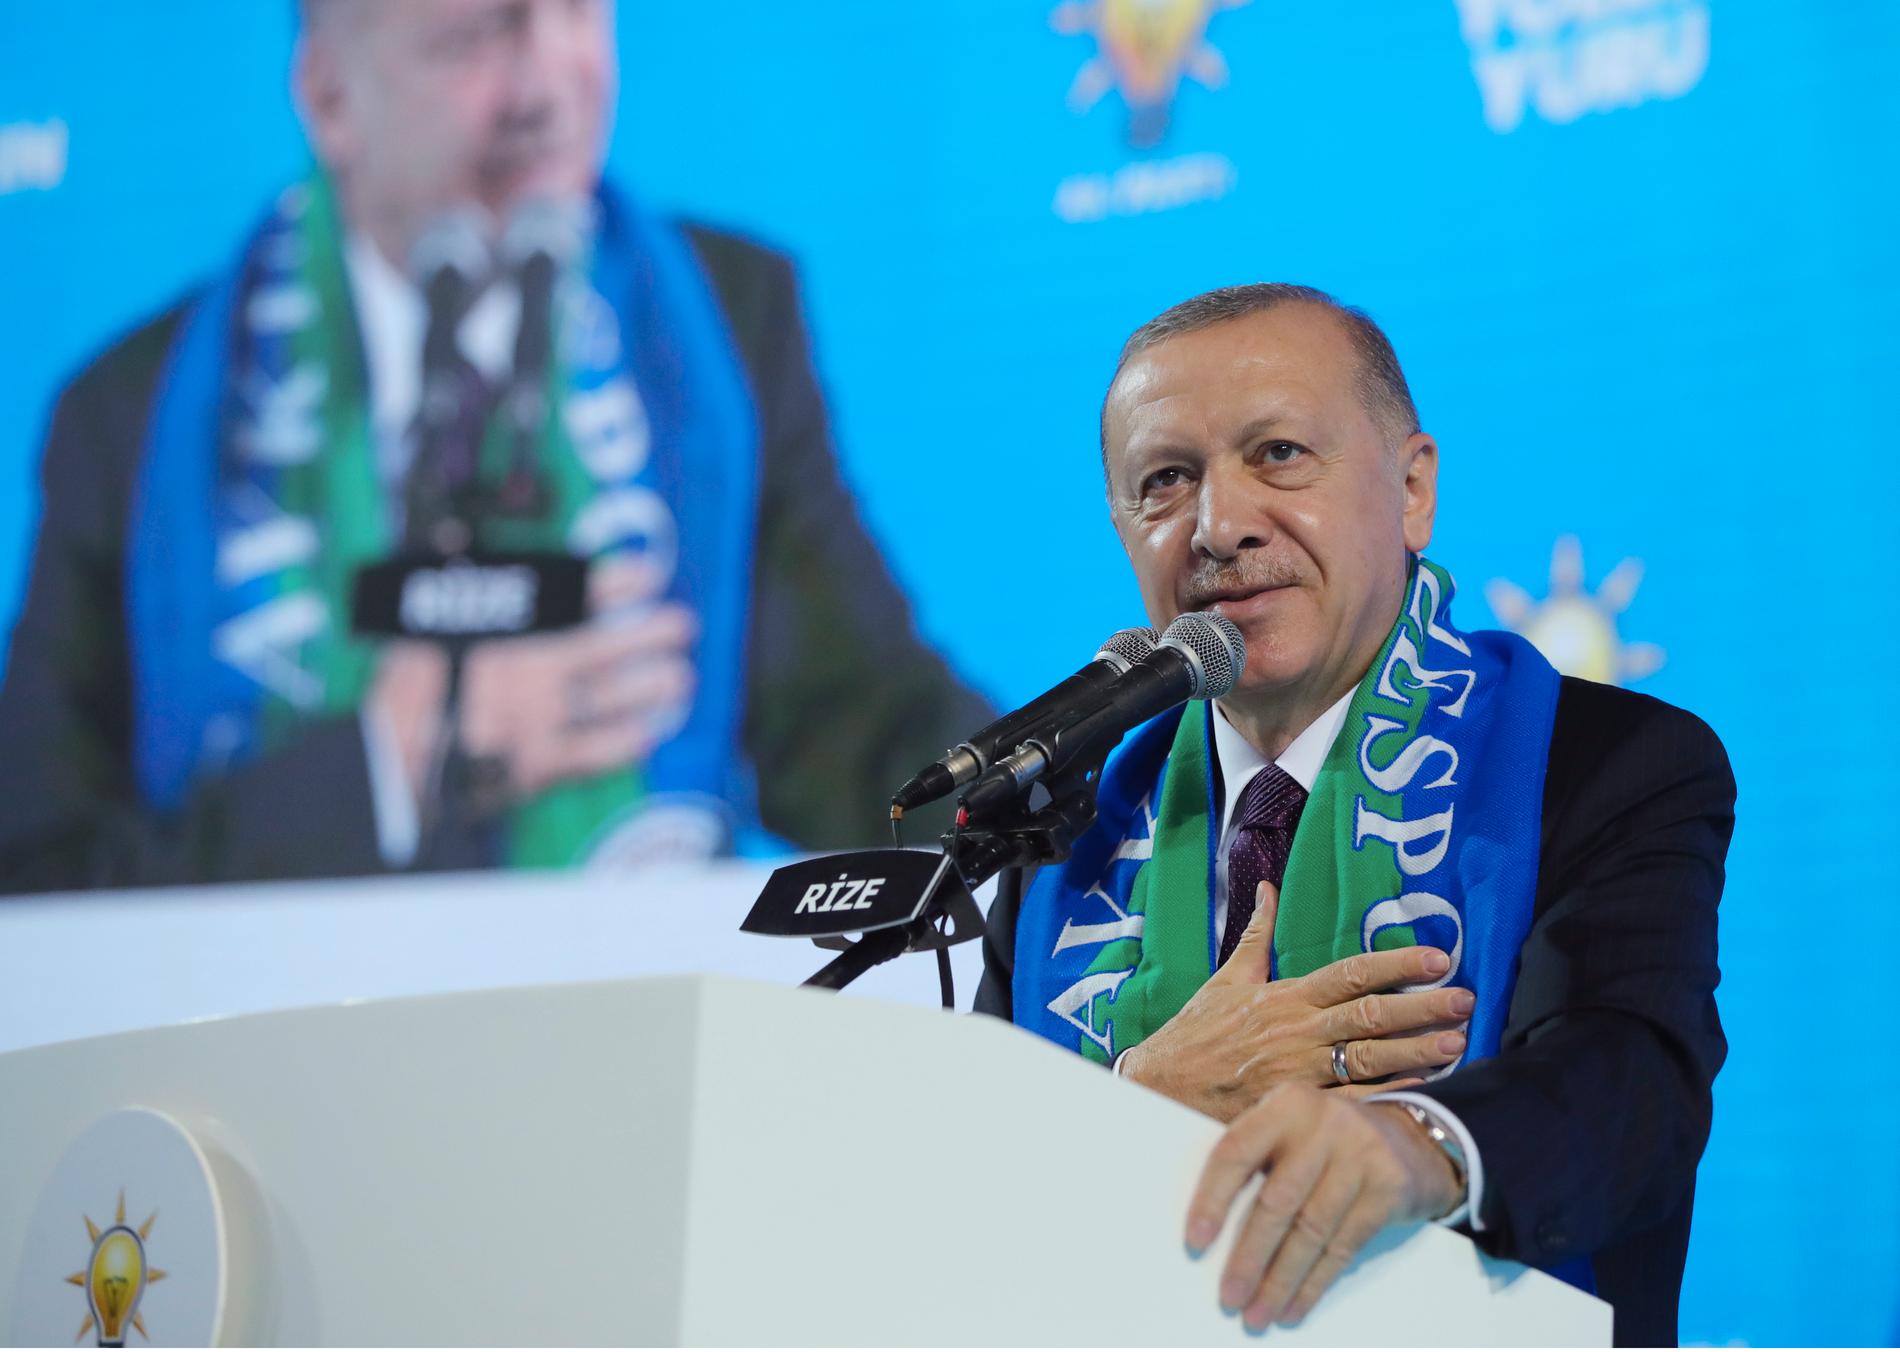 Turkiets president Recep Tayyip Erdoğan under ett tal i Rize i mitten av februari i år.